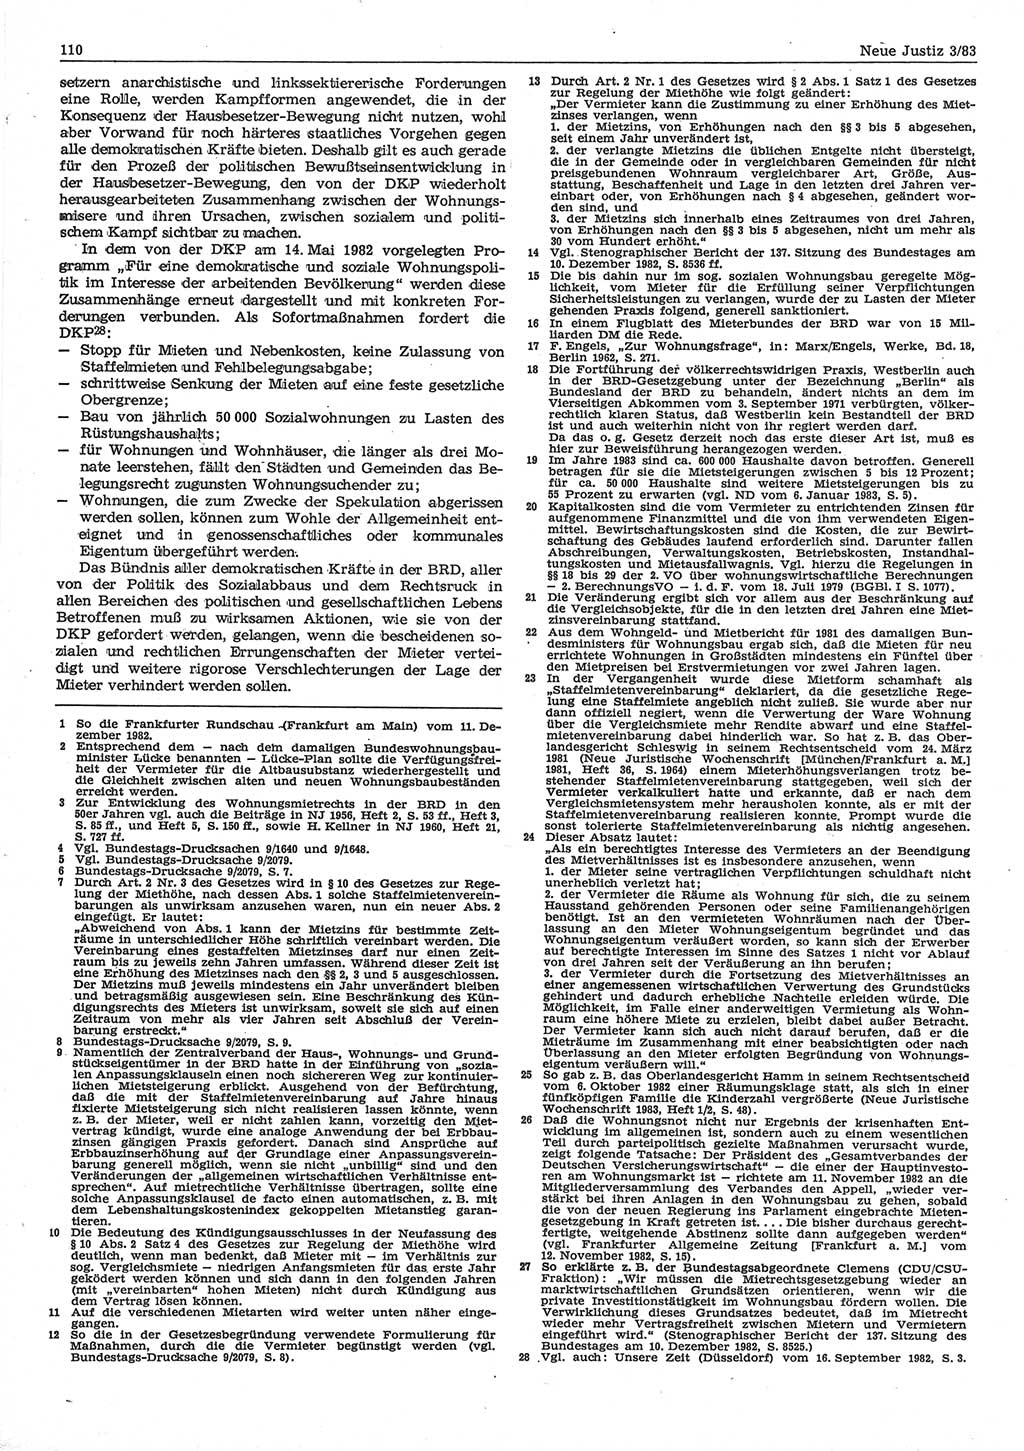 Neue Justiz (NJ), Zeitschrift für sozialistisches Recht und Gesetzlichkeit [Deutsche Demokratische Republik (DDR)], 37. Jahrgang 1983, Seite 110 (NJ DDR 1983, S. 110)